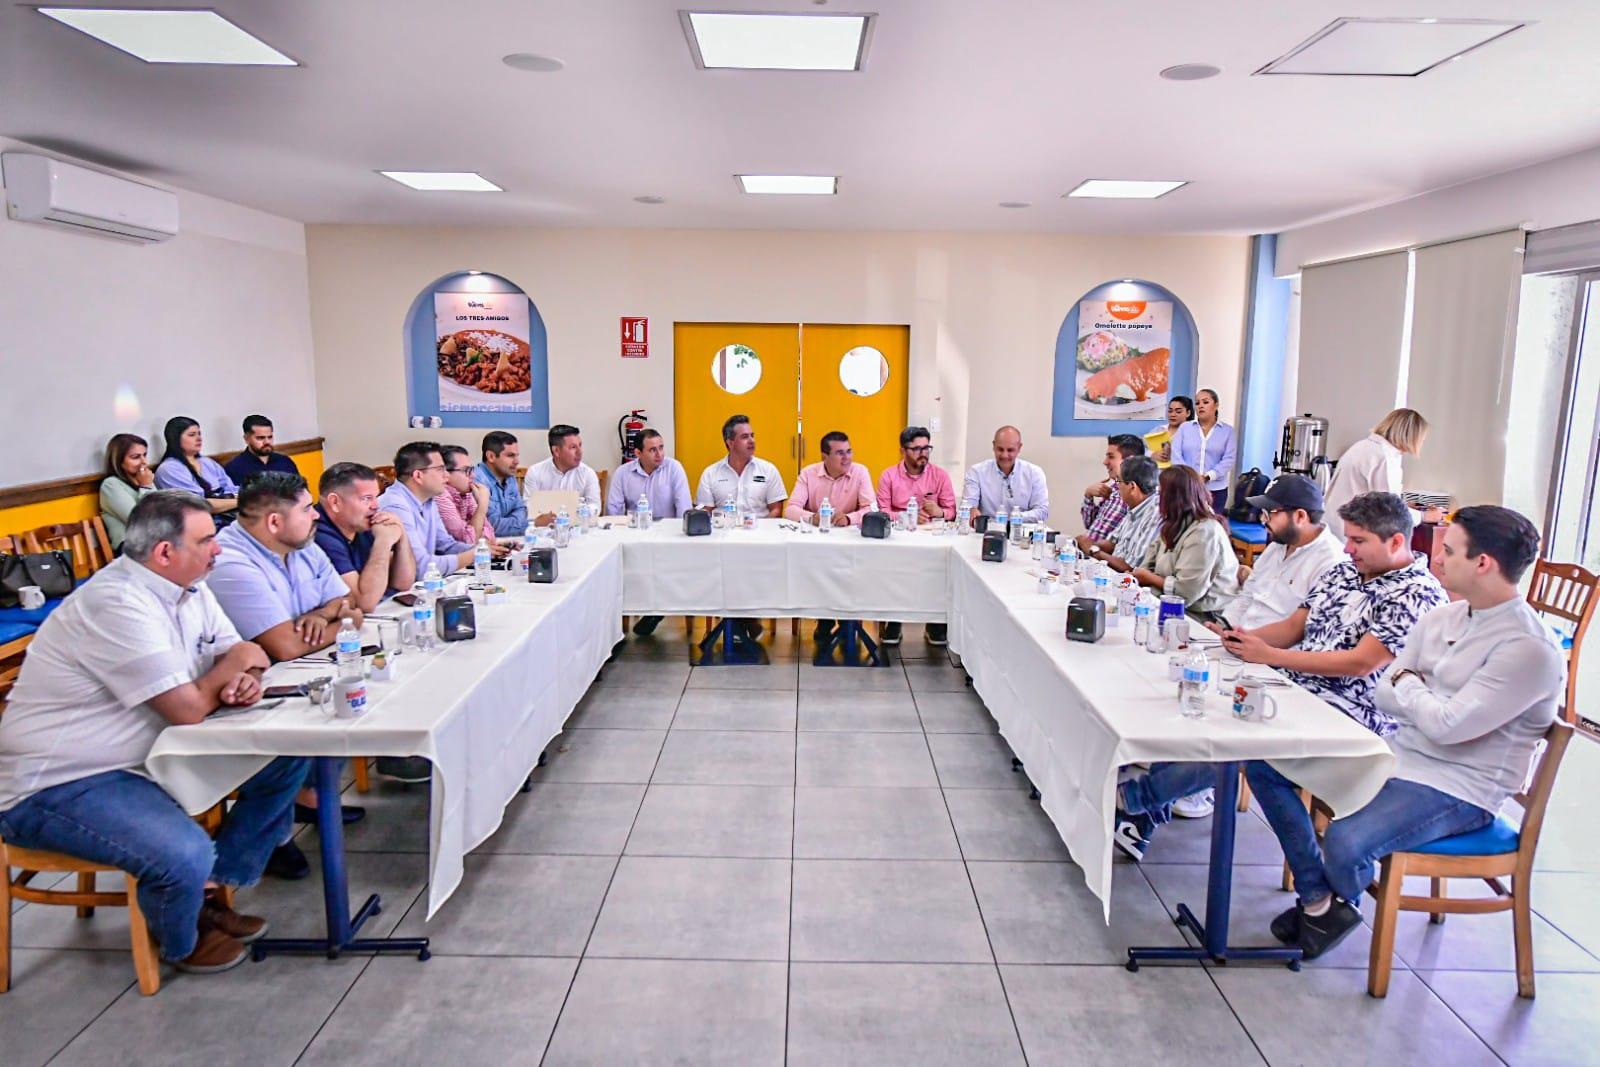 $!Acuerdan restauranteros y Alcalde trabajar juntos por Mazatlán